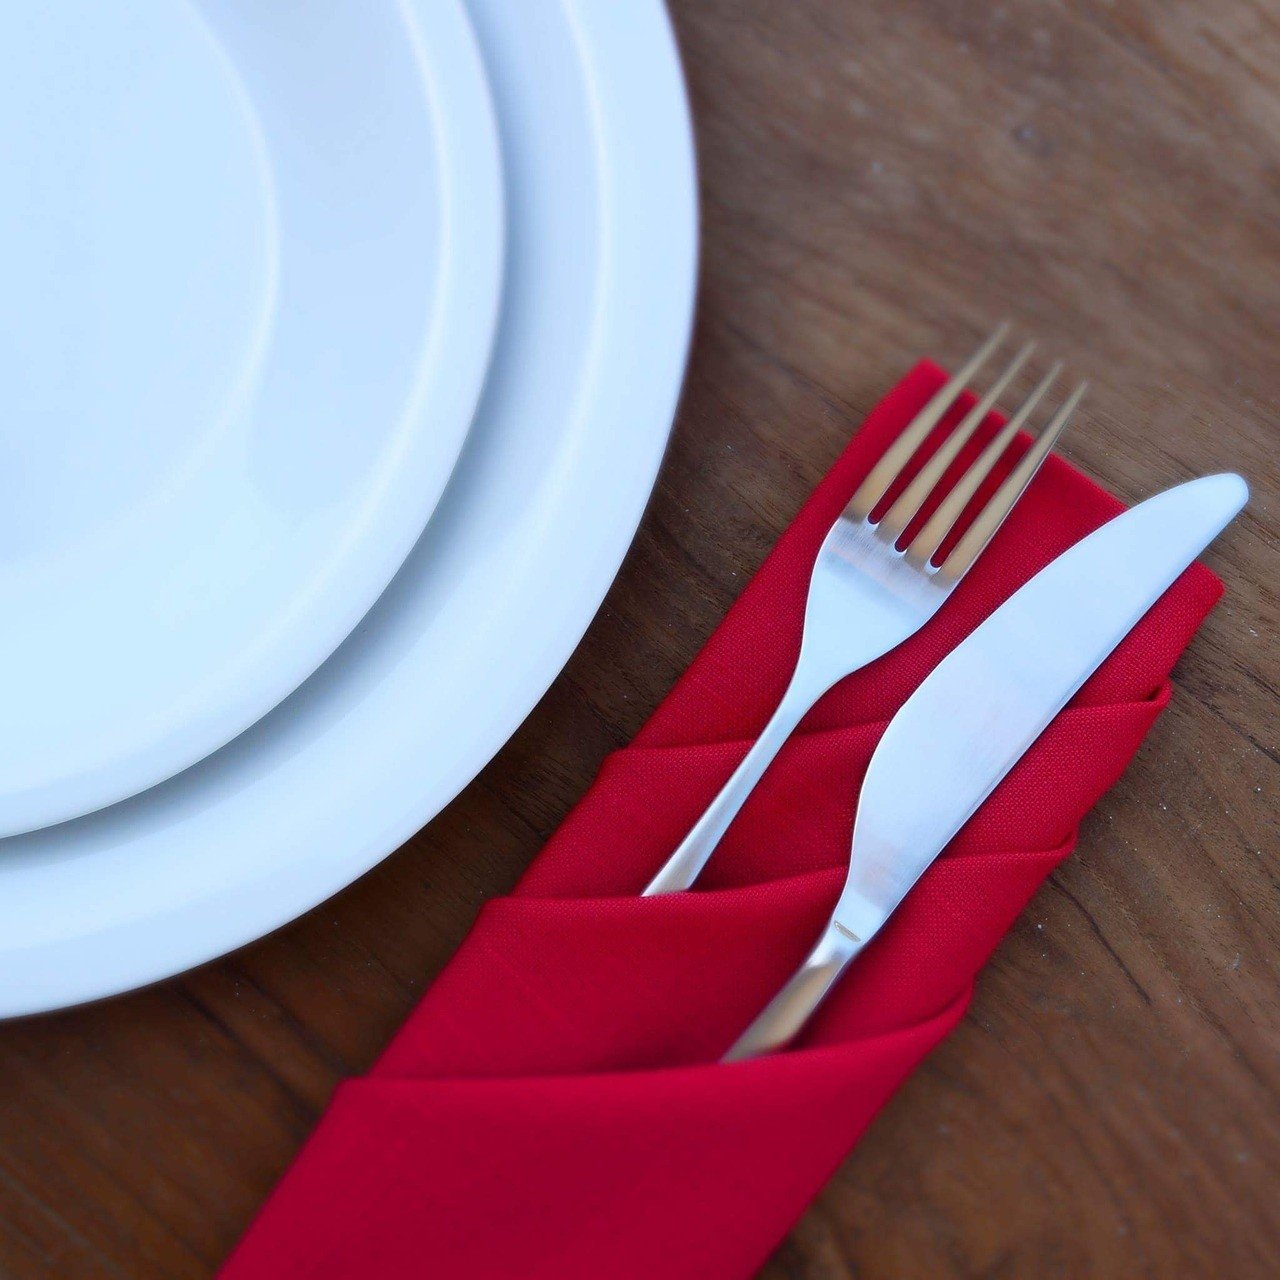 Składanie serwetek – by stół był elegancki (WIDEO) | RegioDom